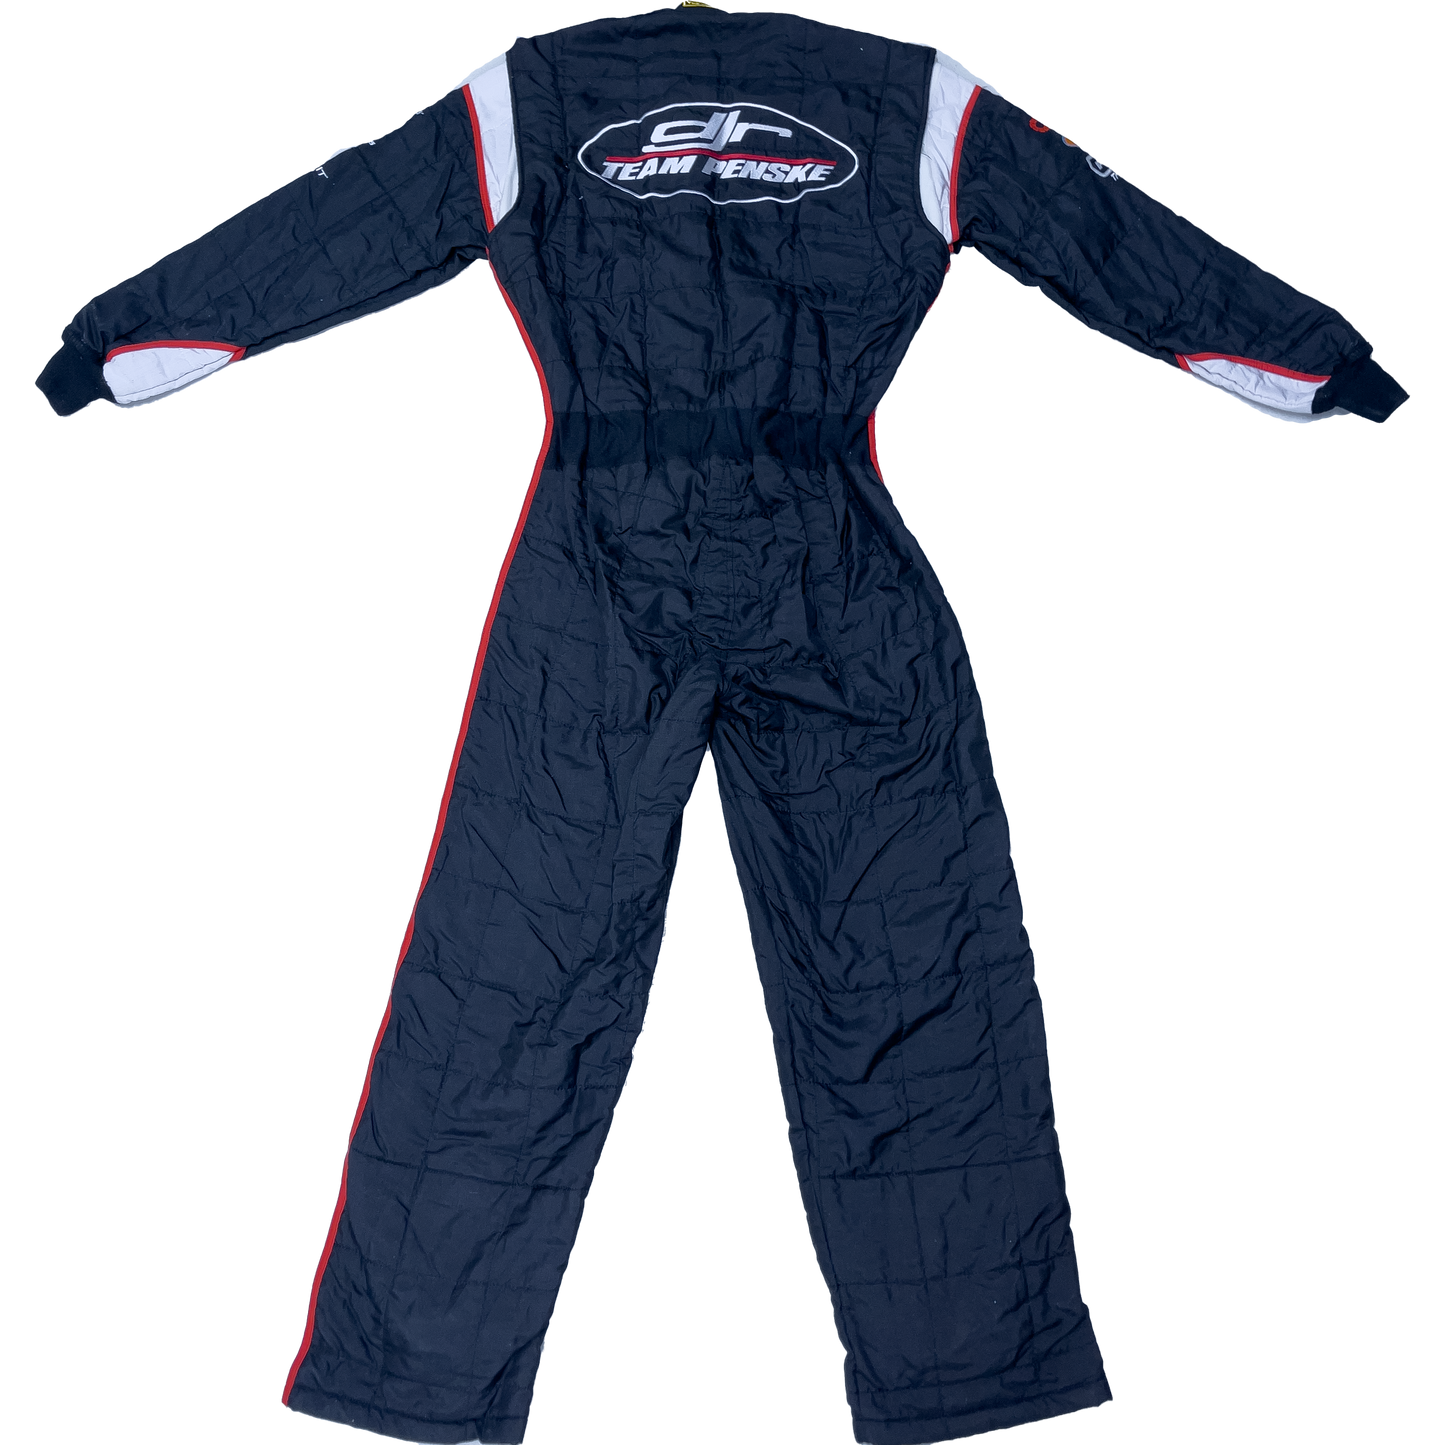 Marcos Ambrose 2015 DJR Team Penske Racing Suit